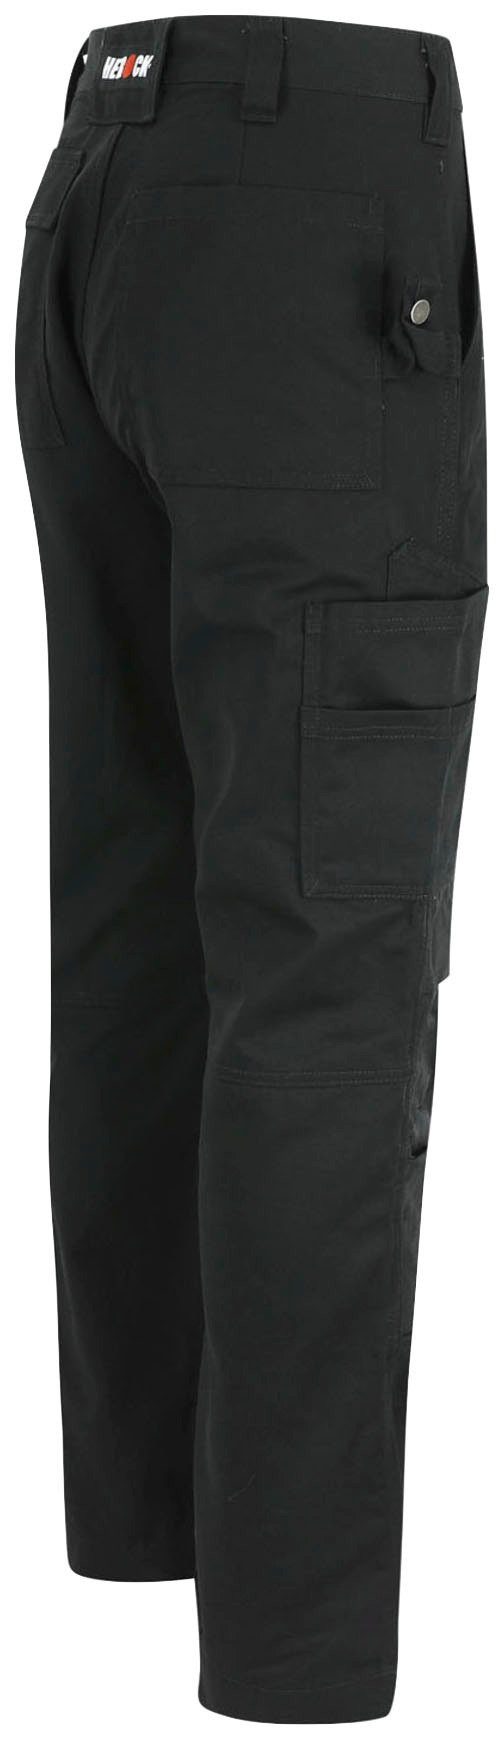 Herock Arbeitshose TITAN HOSE SHORTLEG Taschen, 12 wasserabweisend, schwarz sehr 3-Naht, Kurzgröβe, angenehm